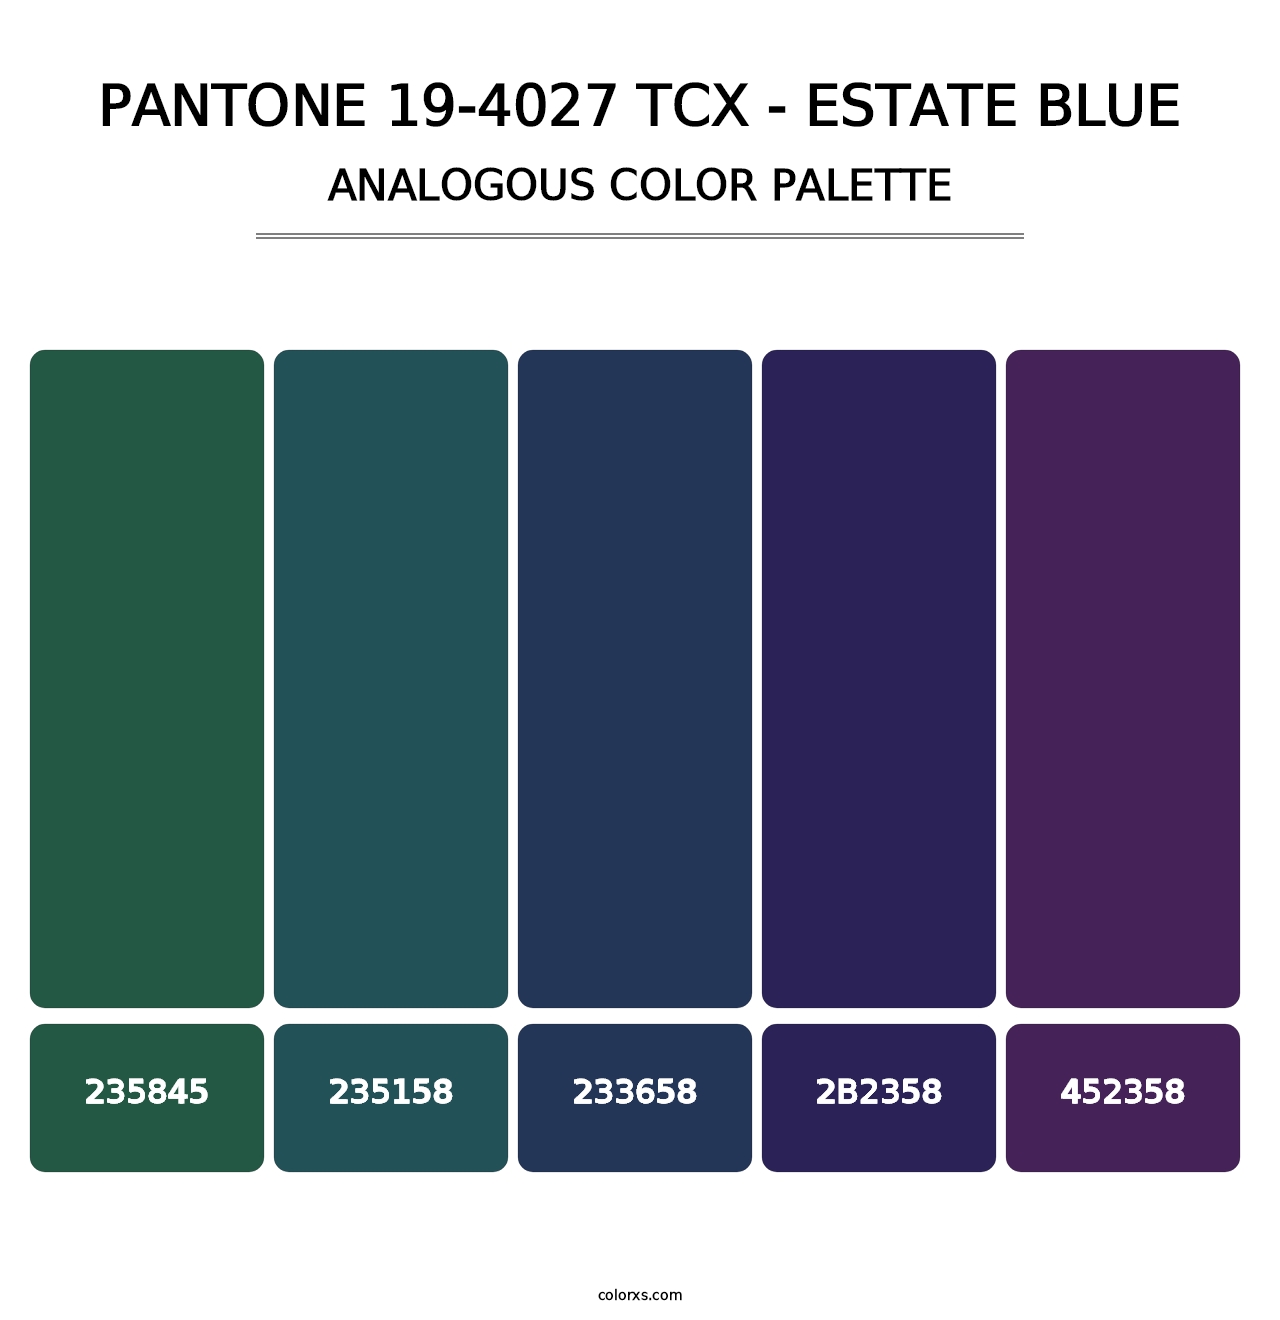 PANTONE 19-4027 TCX - Estate Blue - Analogous Color Palette